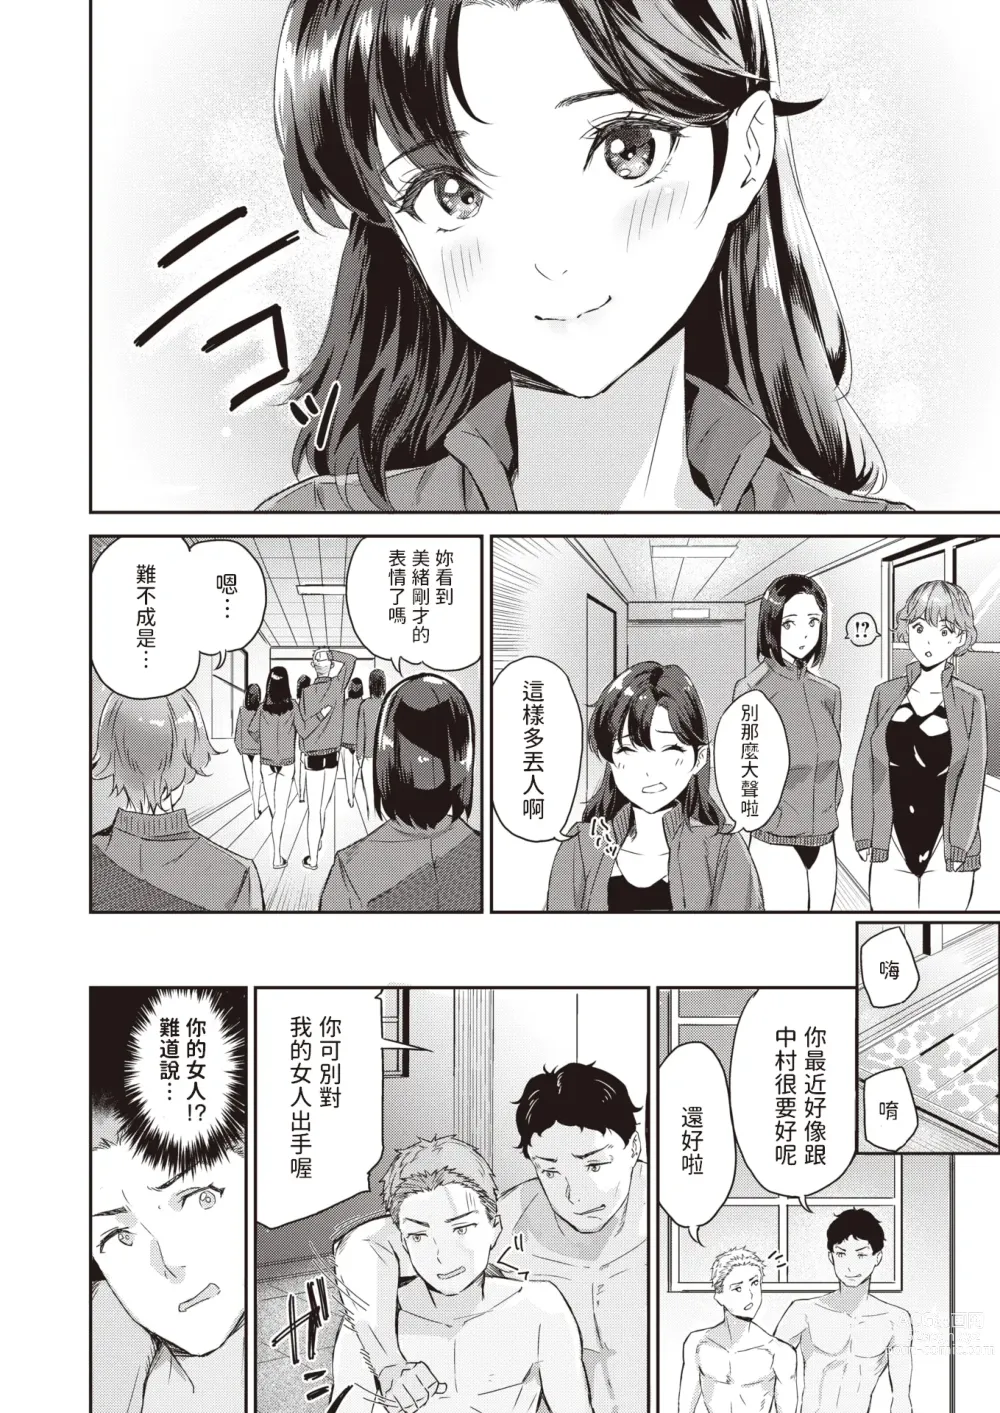 Page 6 of manga Splash!